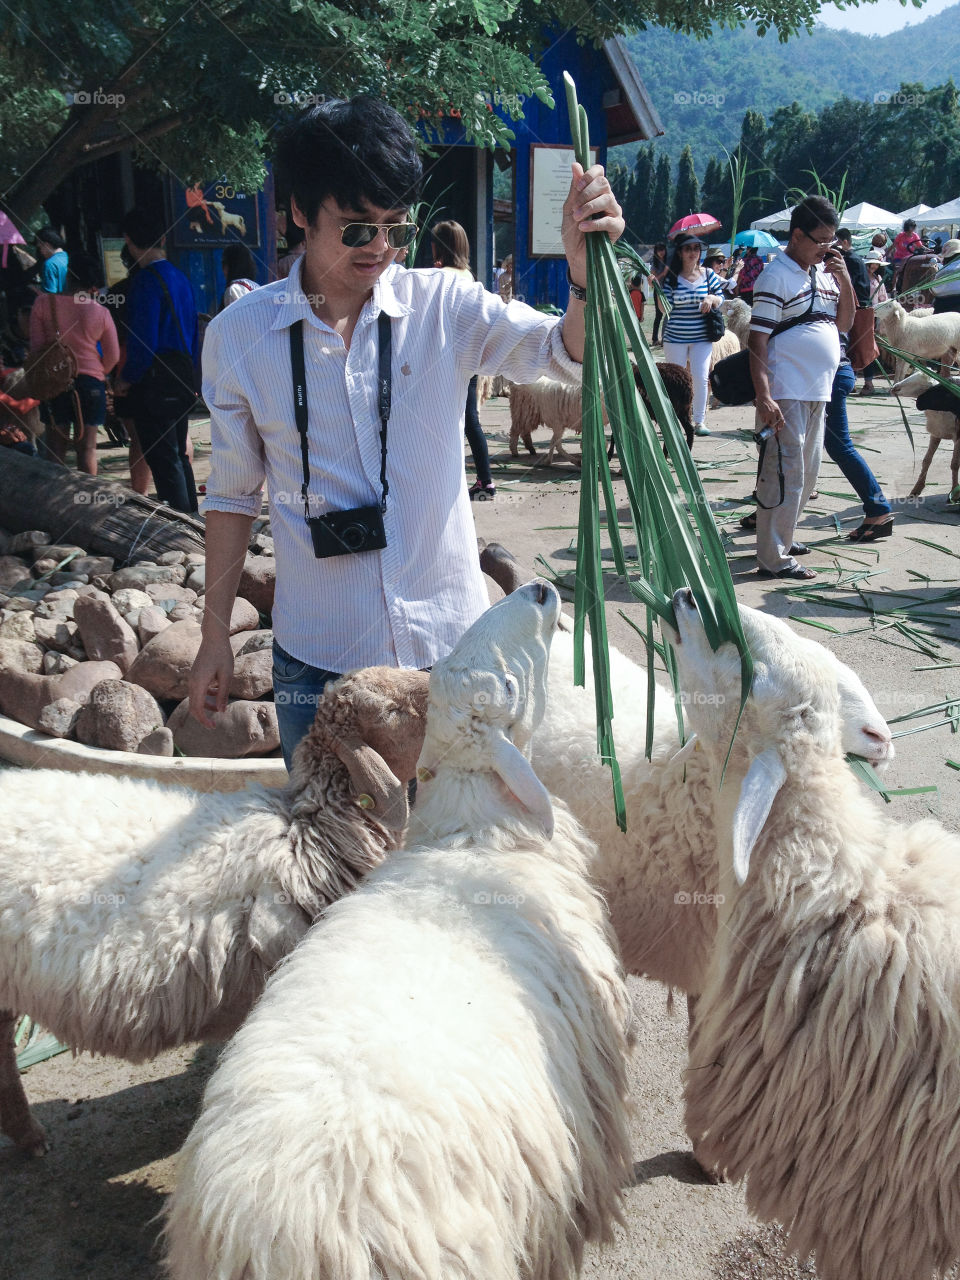 I love a sheeps.At Thailand. 💙💚❤️🇹🇭